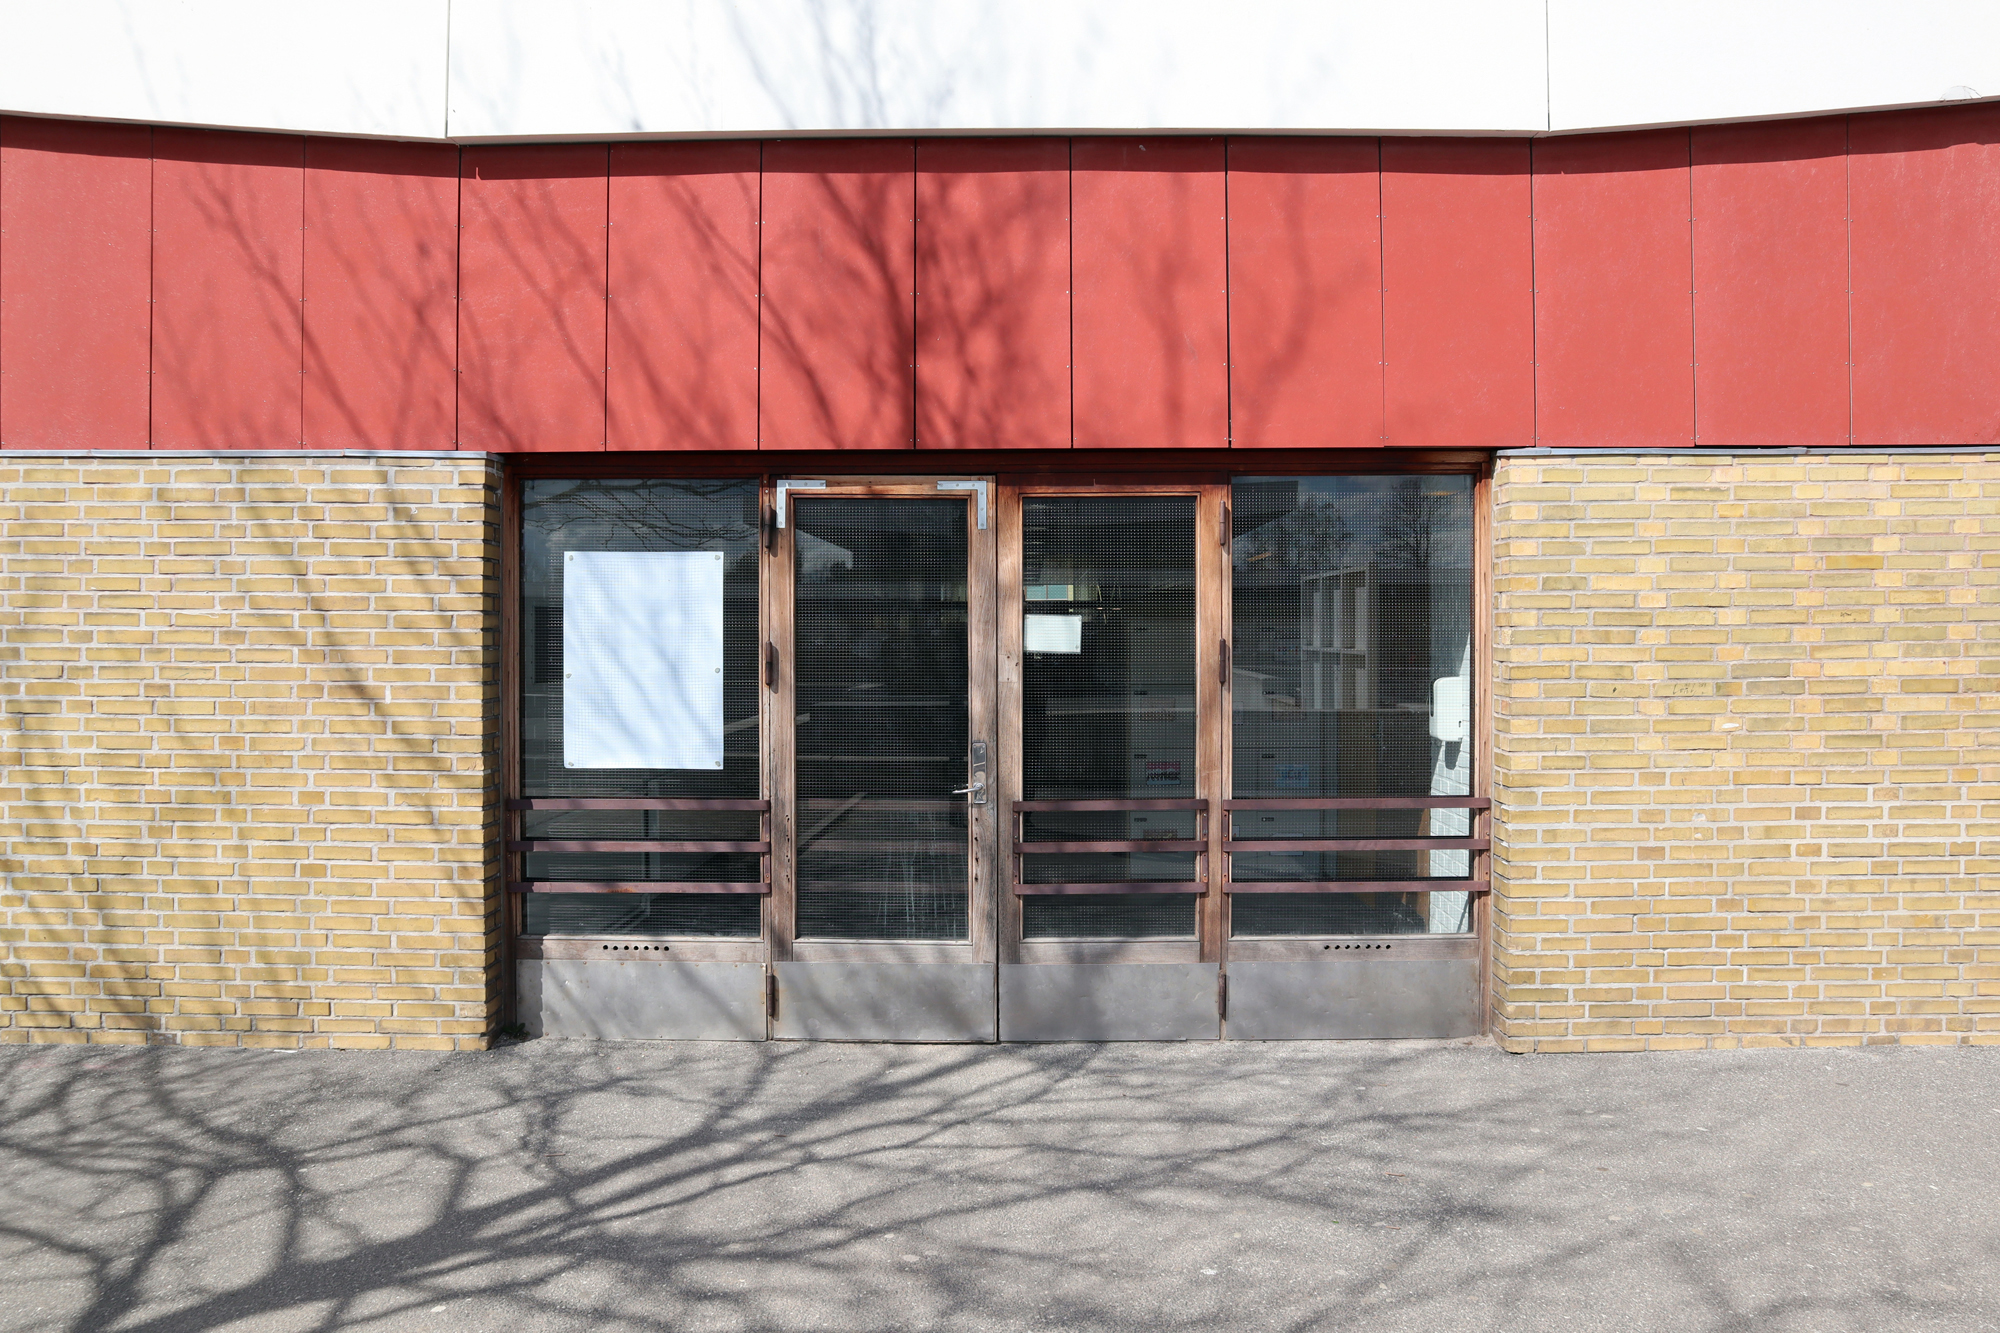 Nur Gentofte nördlich von Kopenhagen hat mehr Gebäude von Arne Jacobsen als Rødovre und andere Gemeinden in Dänemark. In den ersten Jahrzehnten nach dem Zweiten Weltkrieg prägte er das schnell wachsende Vorstadtgebiet mit seiner Siedlungsarchitektur wie beispielsweise von Carlsro und Islevvænge, sowie der berühmten Nyager Schule.